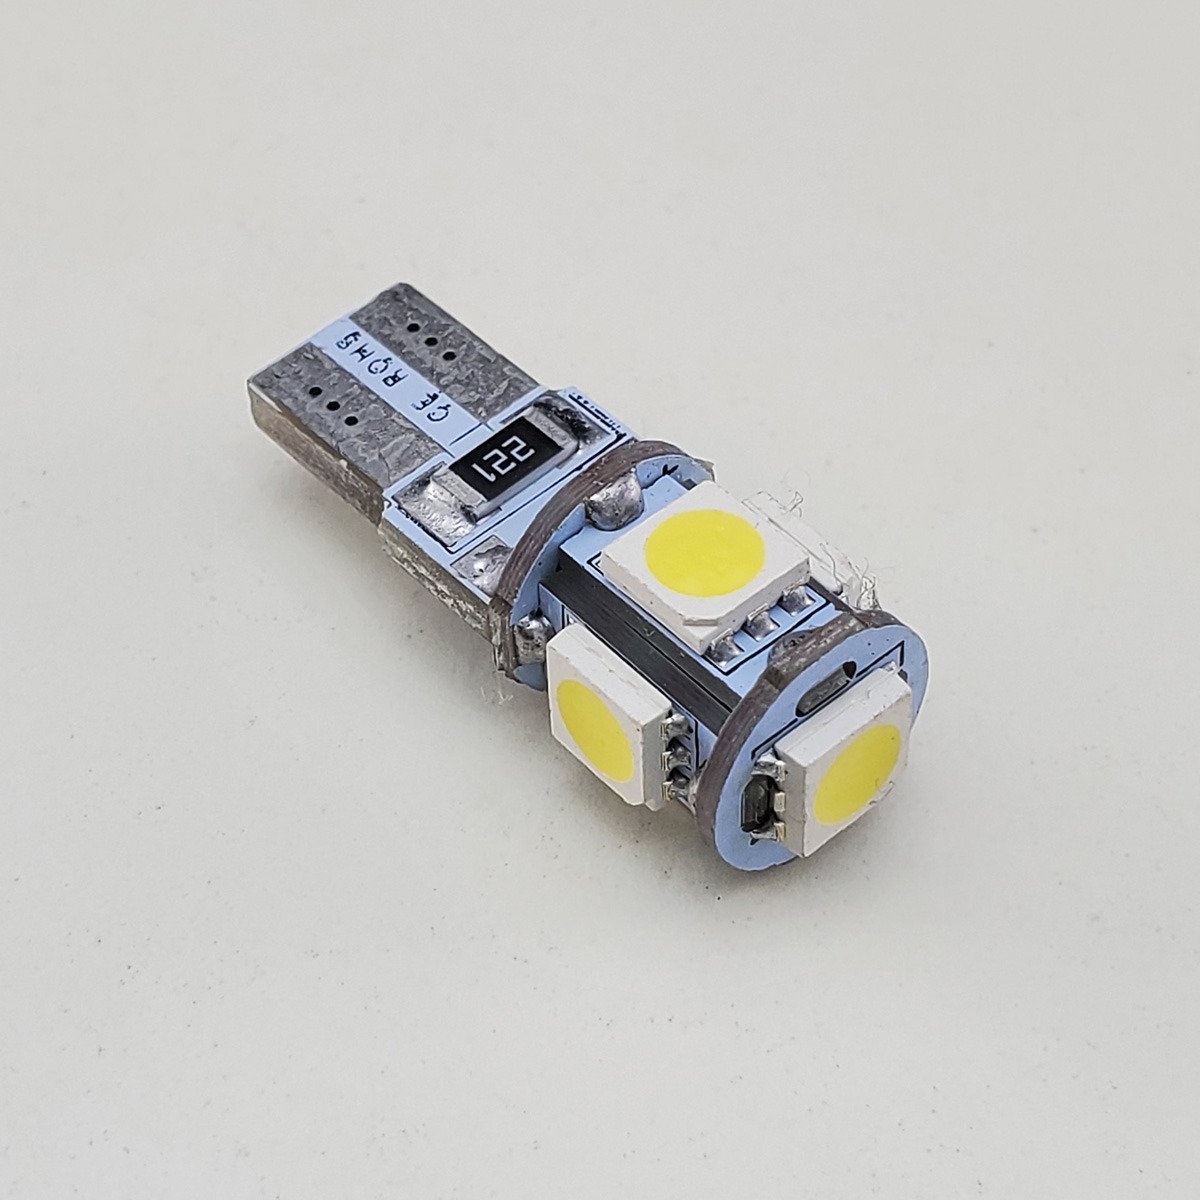 LED Żarówka Ledowa W5W 5x SMD-5050 CanBus BIAŁA BIAŁA 6000K  Żarówki  Samochodowe LED \ CanBus Żarówki Diodowe LED Żarówki Samochodowe LED \ W5W  (T10) Postojowe & Wnętrze LED